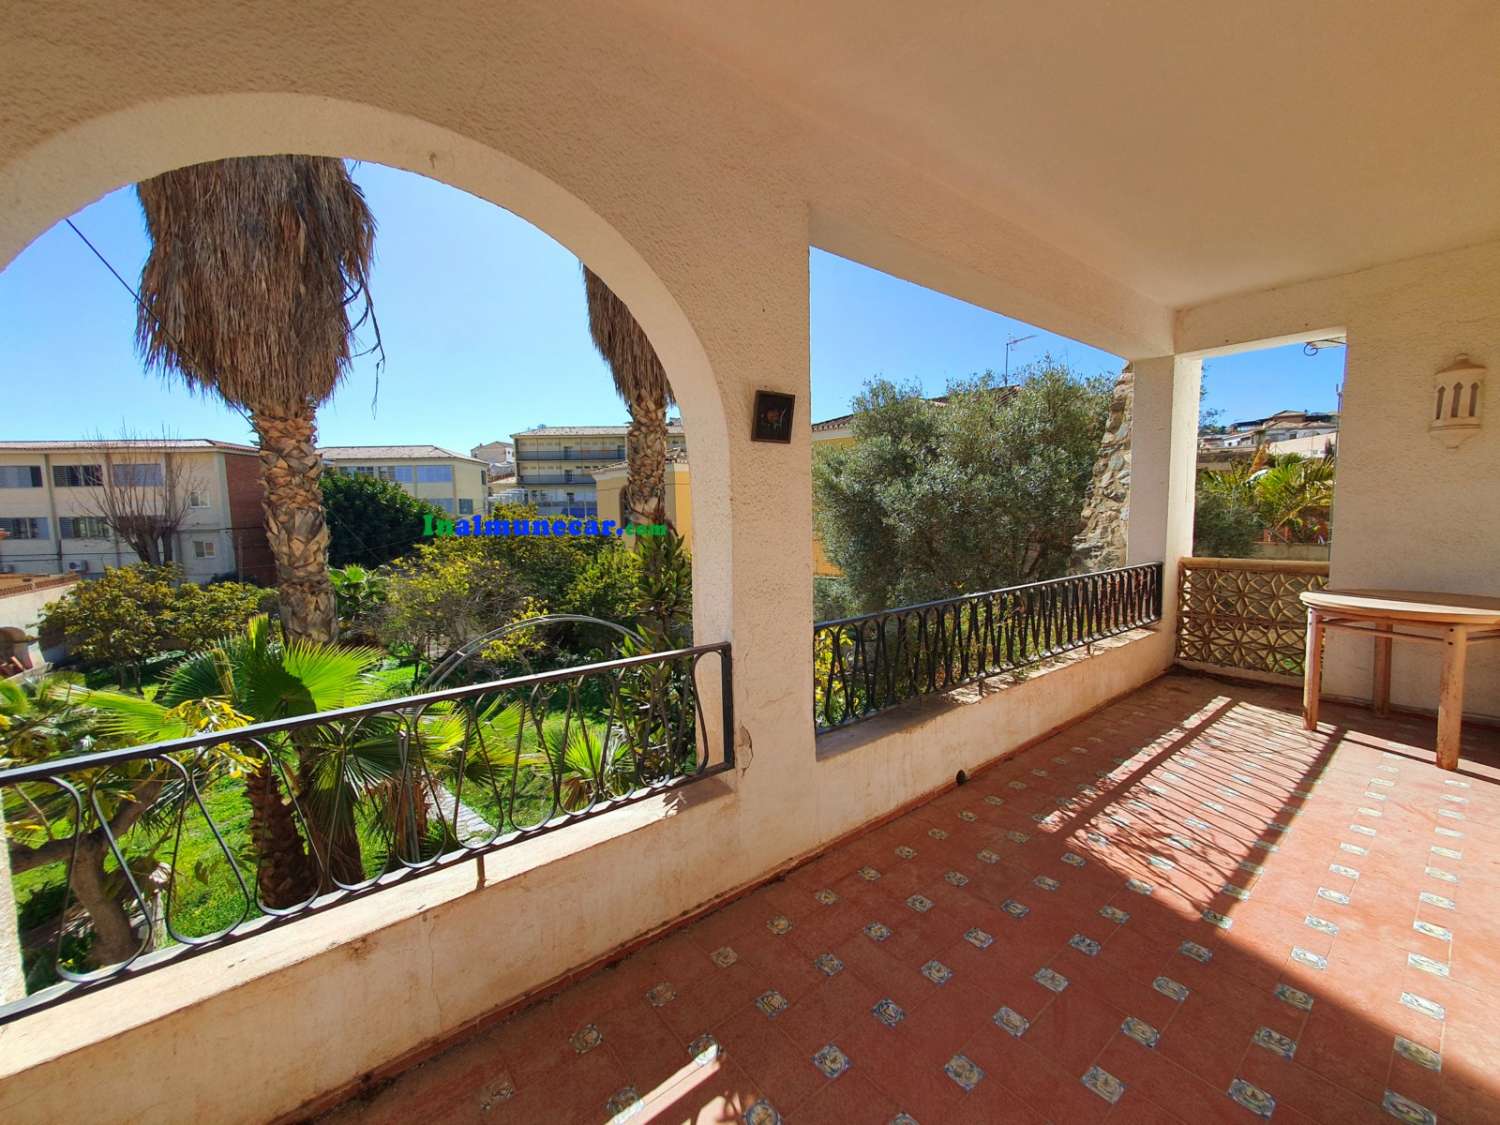 Villa en venta en Almuñecar cerca de la playa de San Cristobal y con amplia parcela con frutales